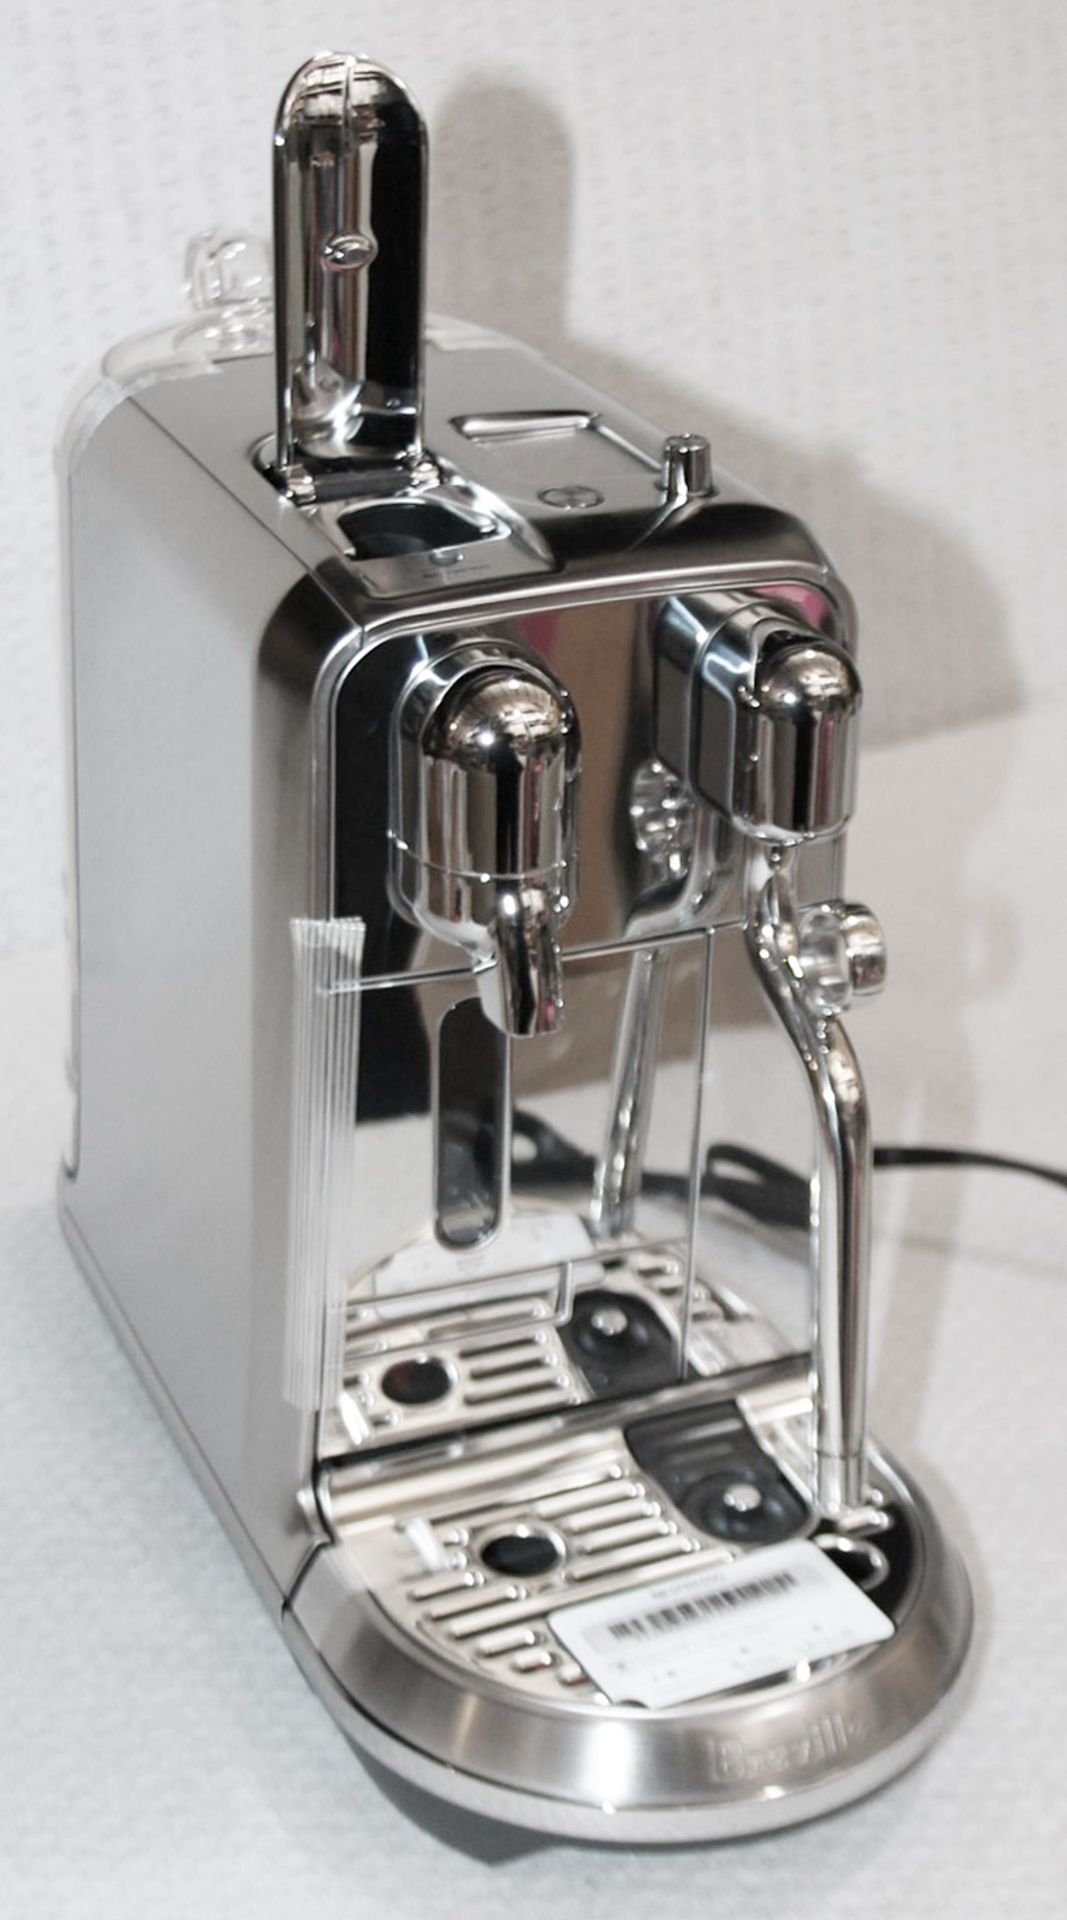 1 x NESPRESSO 'Creatista Plus' Coffee Machine In Silver - Original Price £479.95 - Boxed Stock - Image 4 of 18